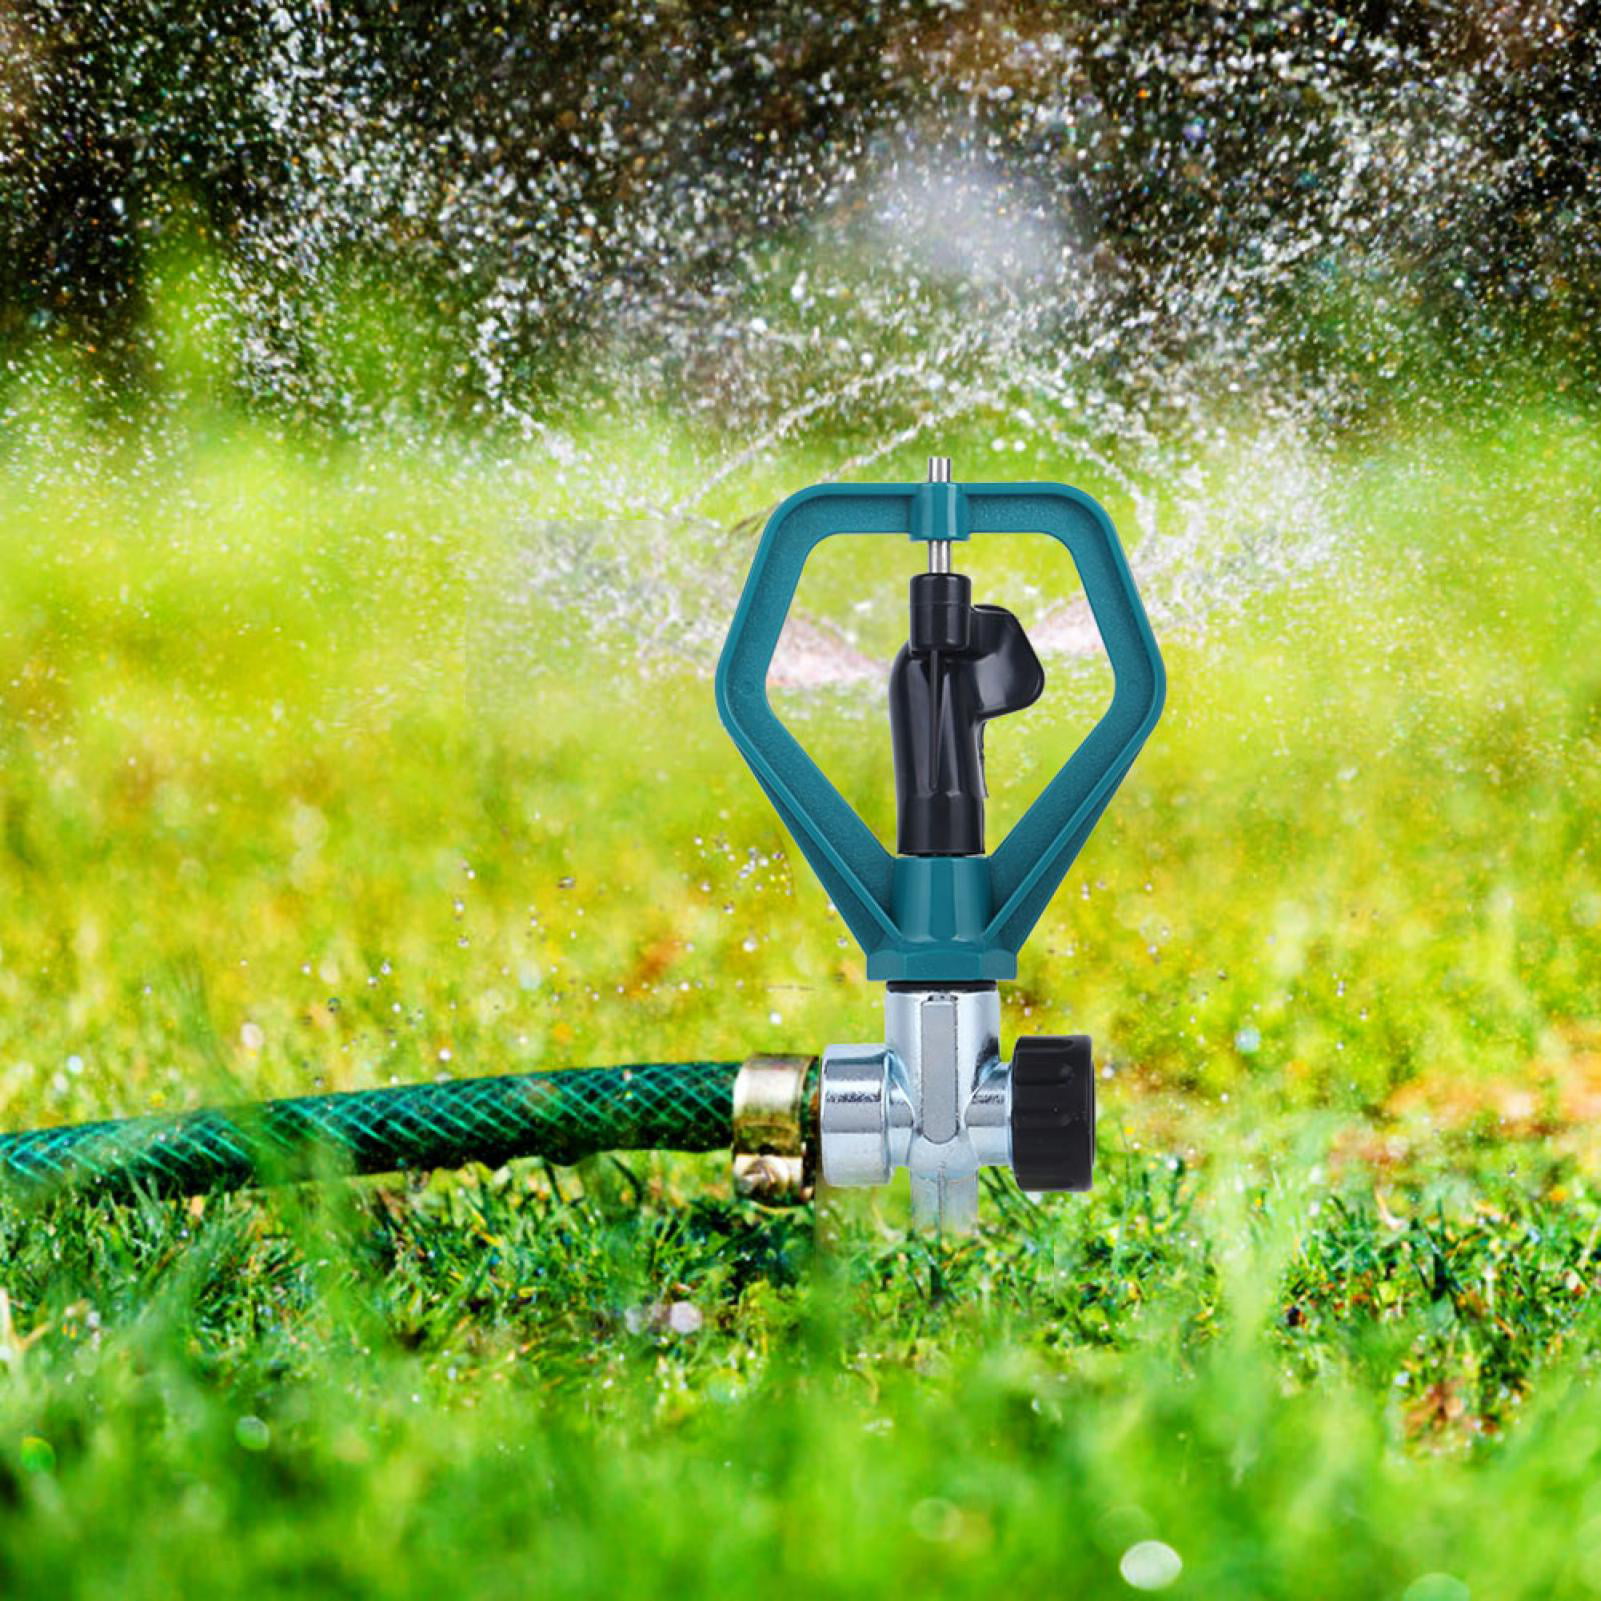 Plastic Water Sprinkler System Impulse Long Range Sprinklers for Garden and Lawn 